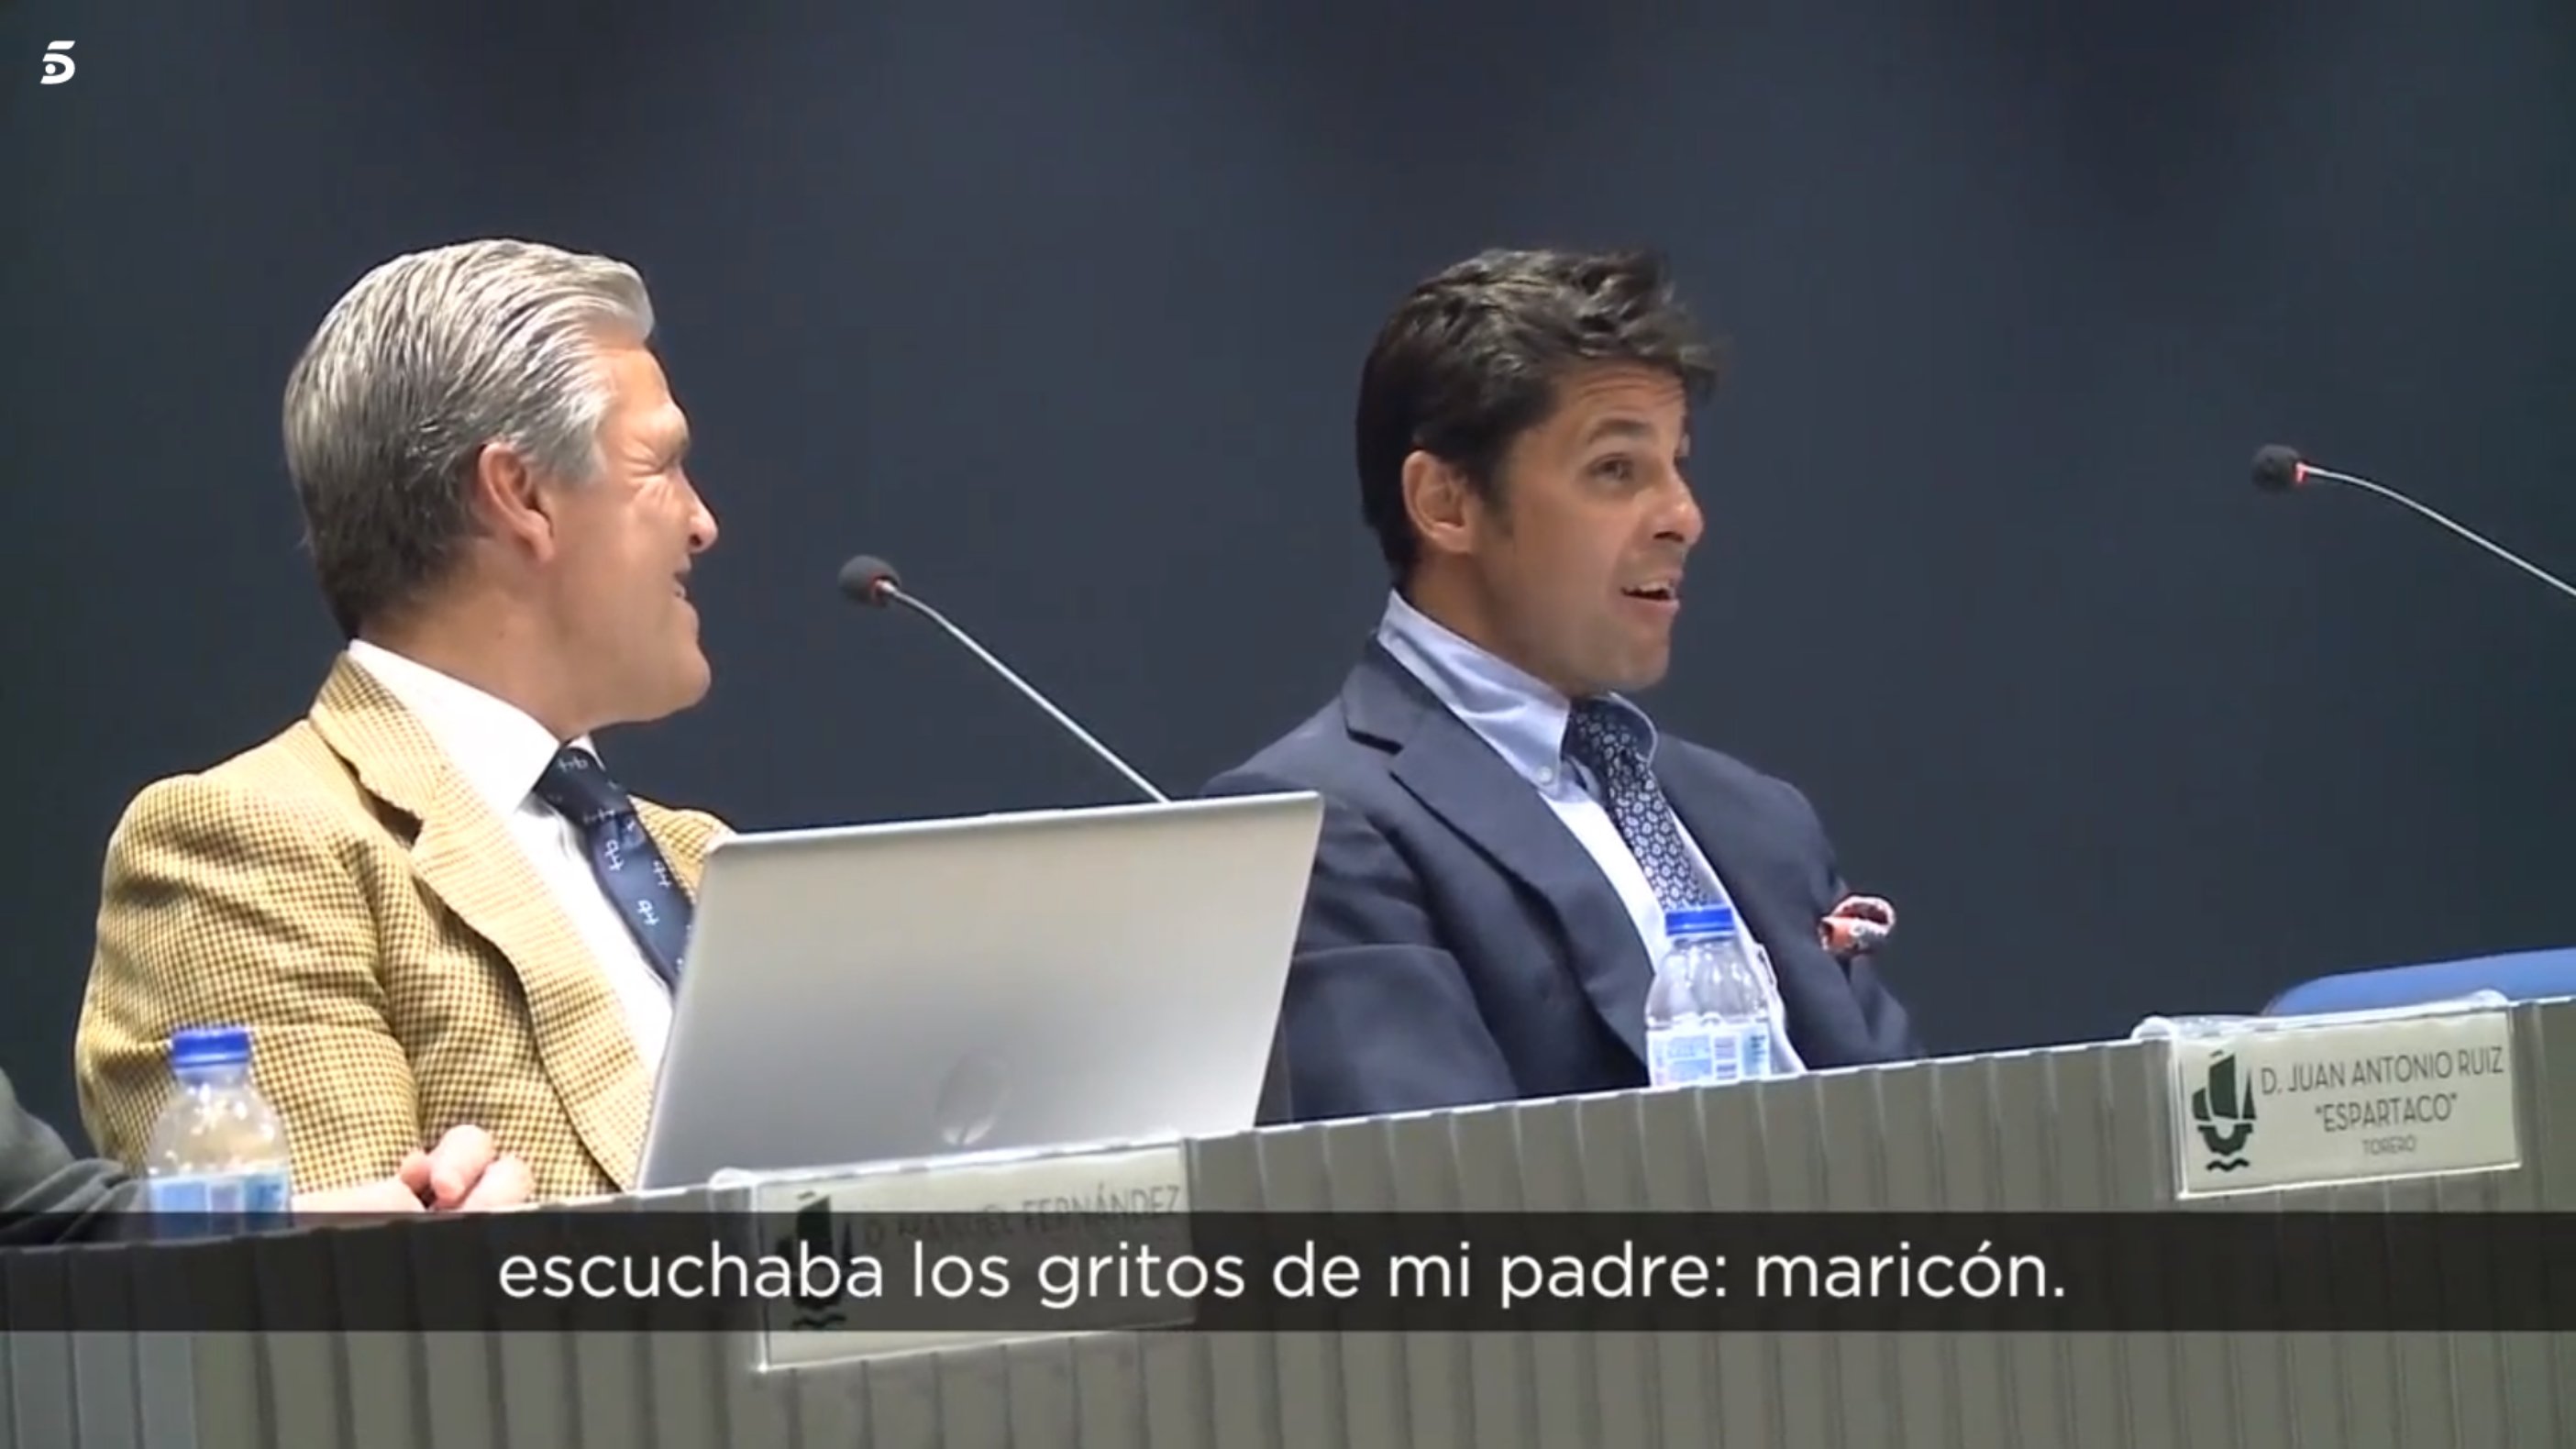 Fran Rivera recorda divertit els comentaris homòfobs del seu pare: "¡Maricón!"